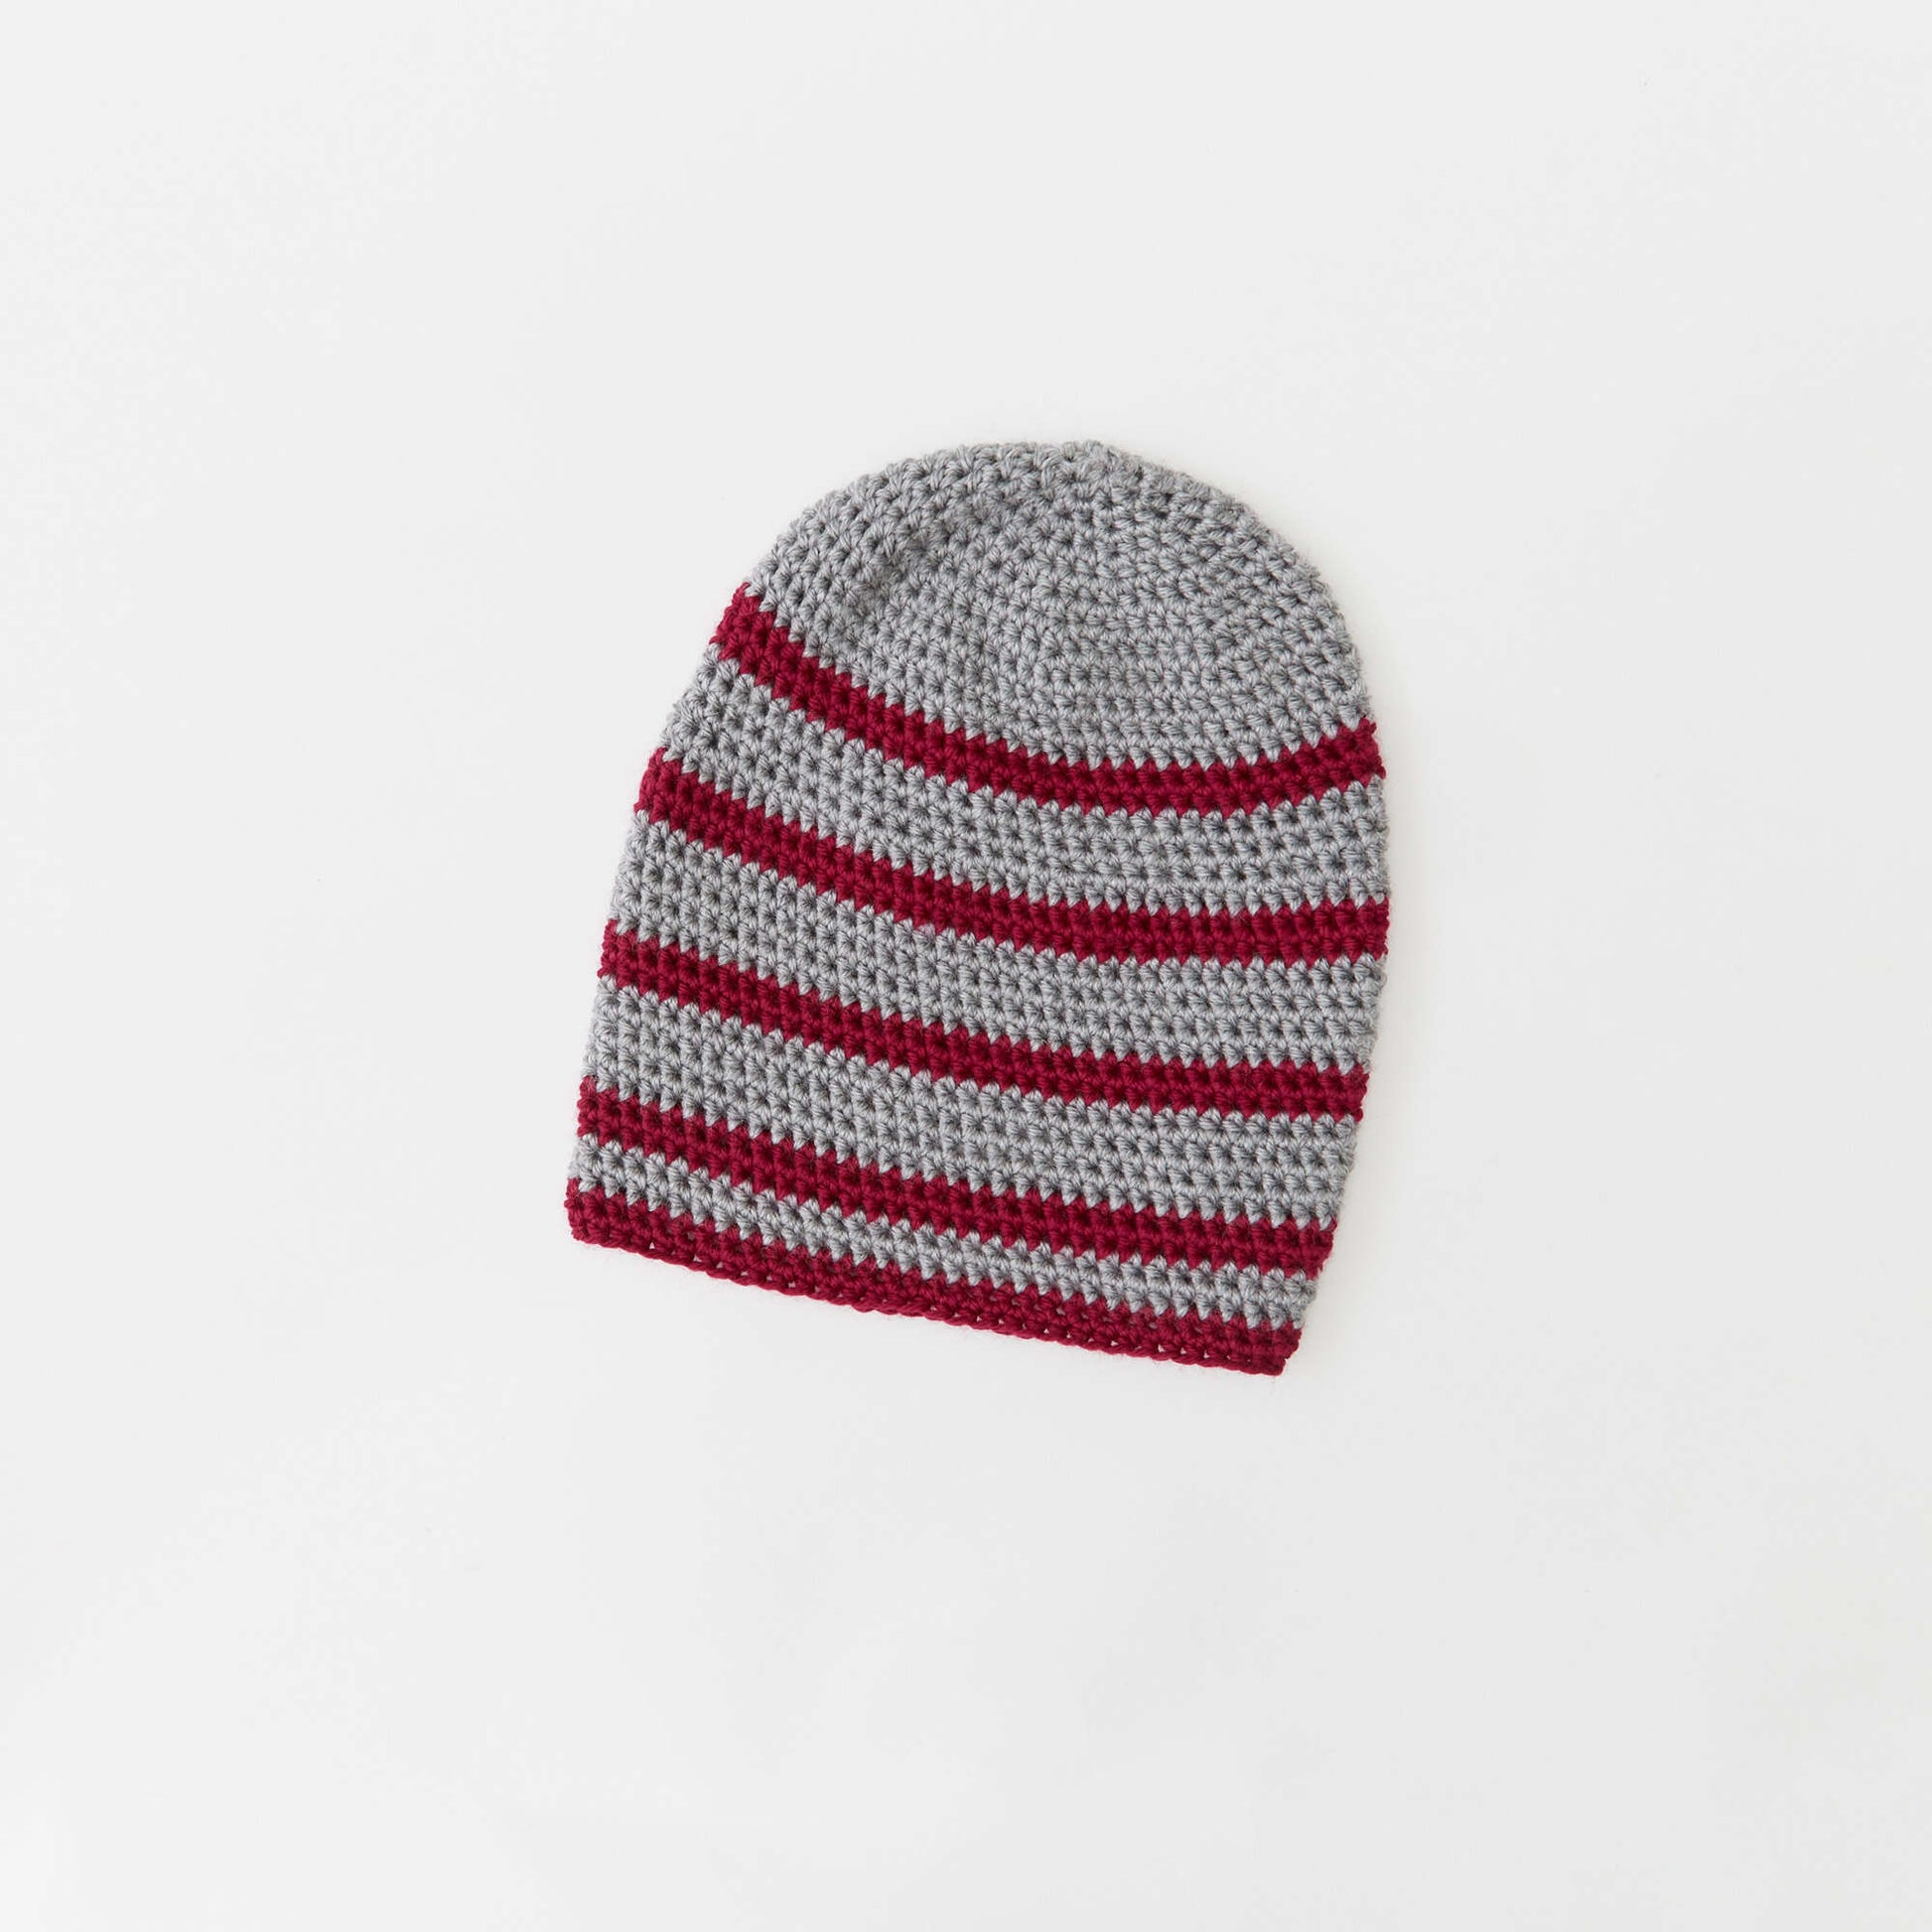 Free Red Heart Beginner Crochet Striped Hat Pattern